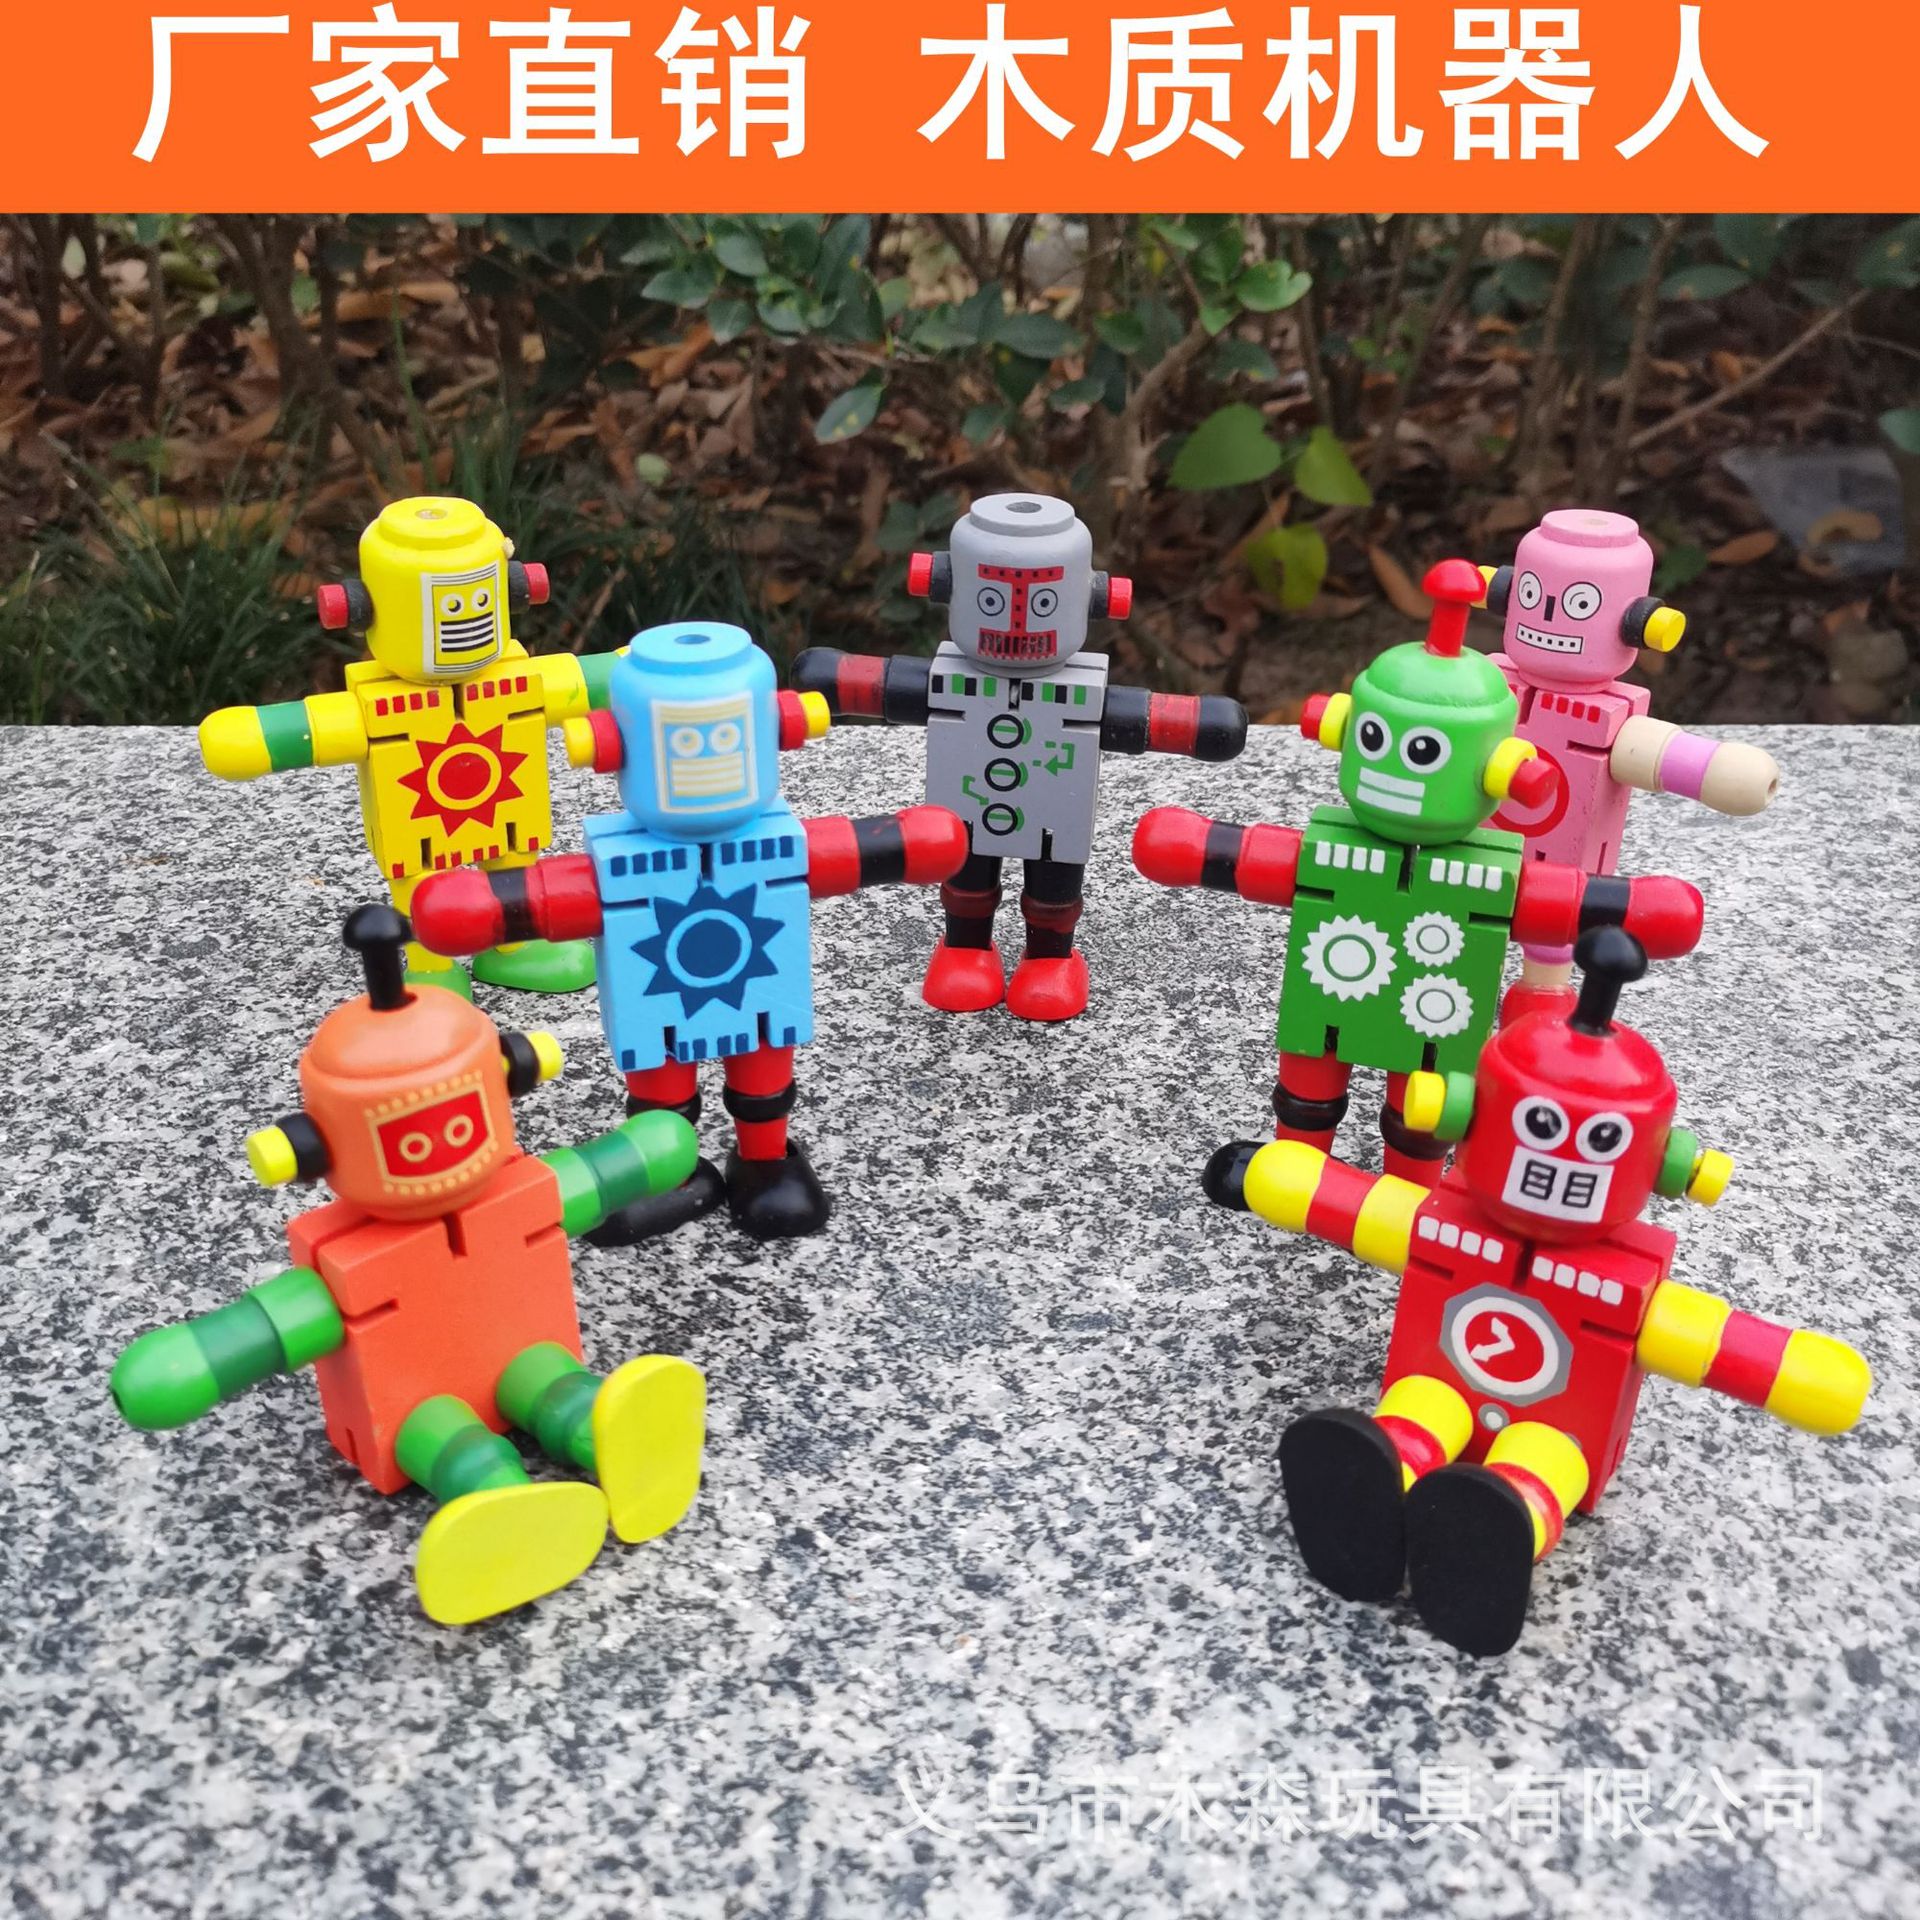 创意个性积木玩具木制机器人百变形弹性木头人儿童益智类早教玩具